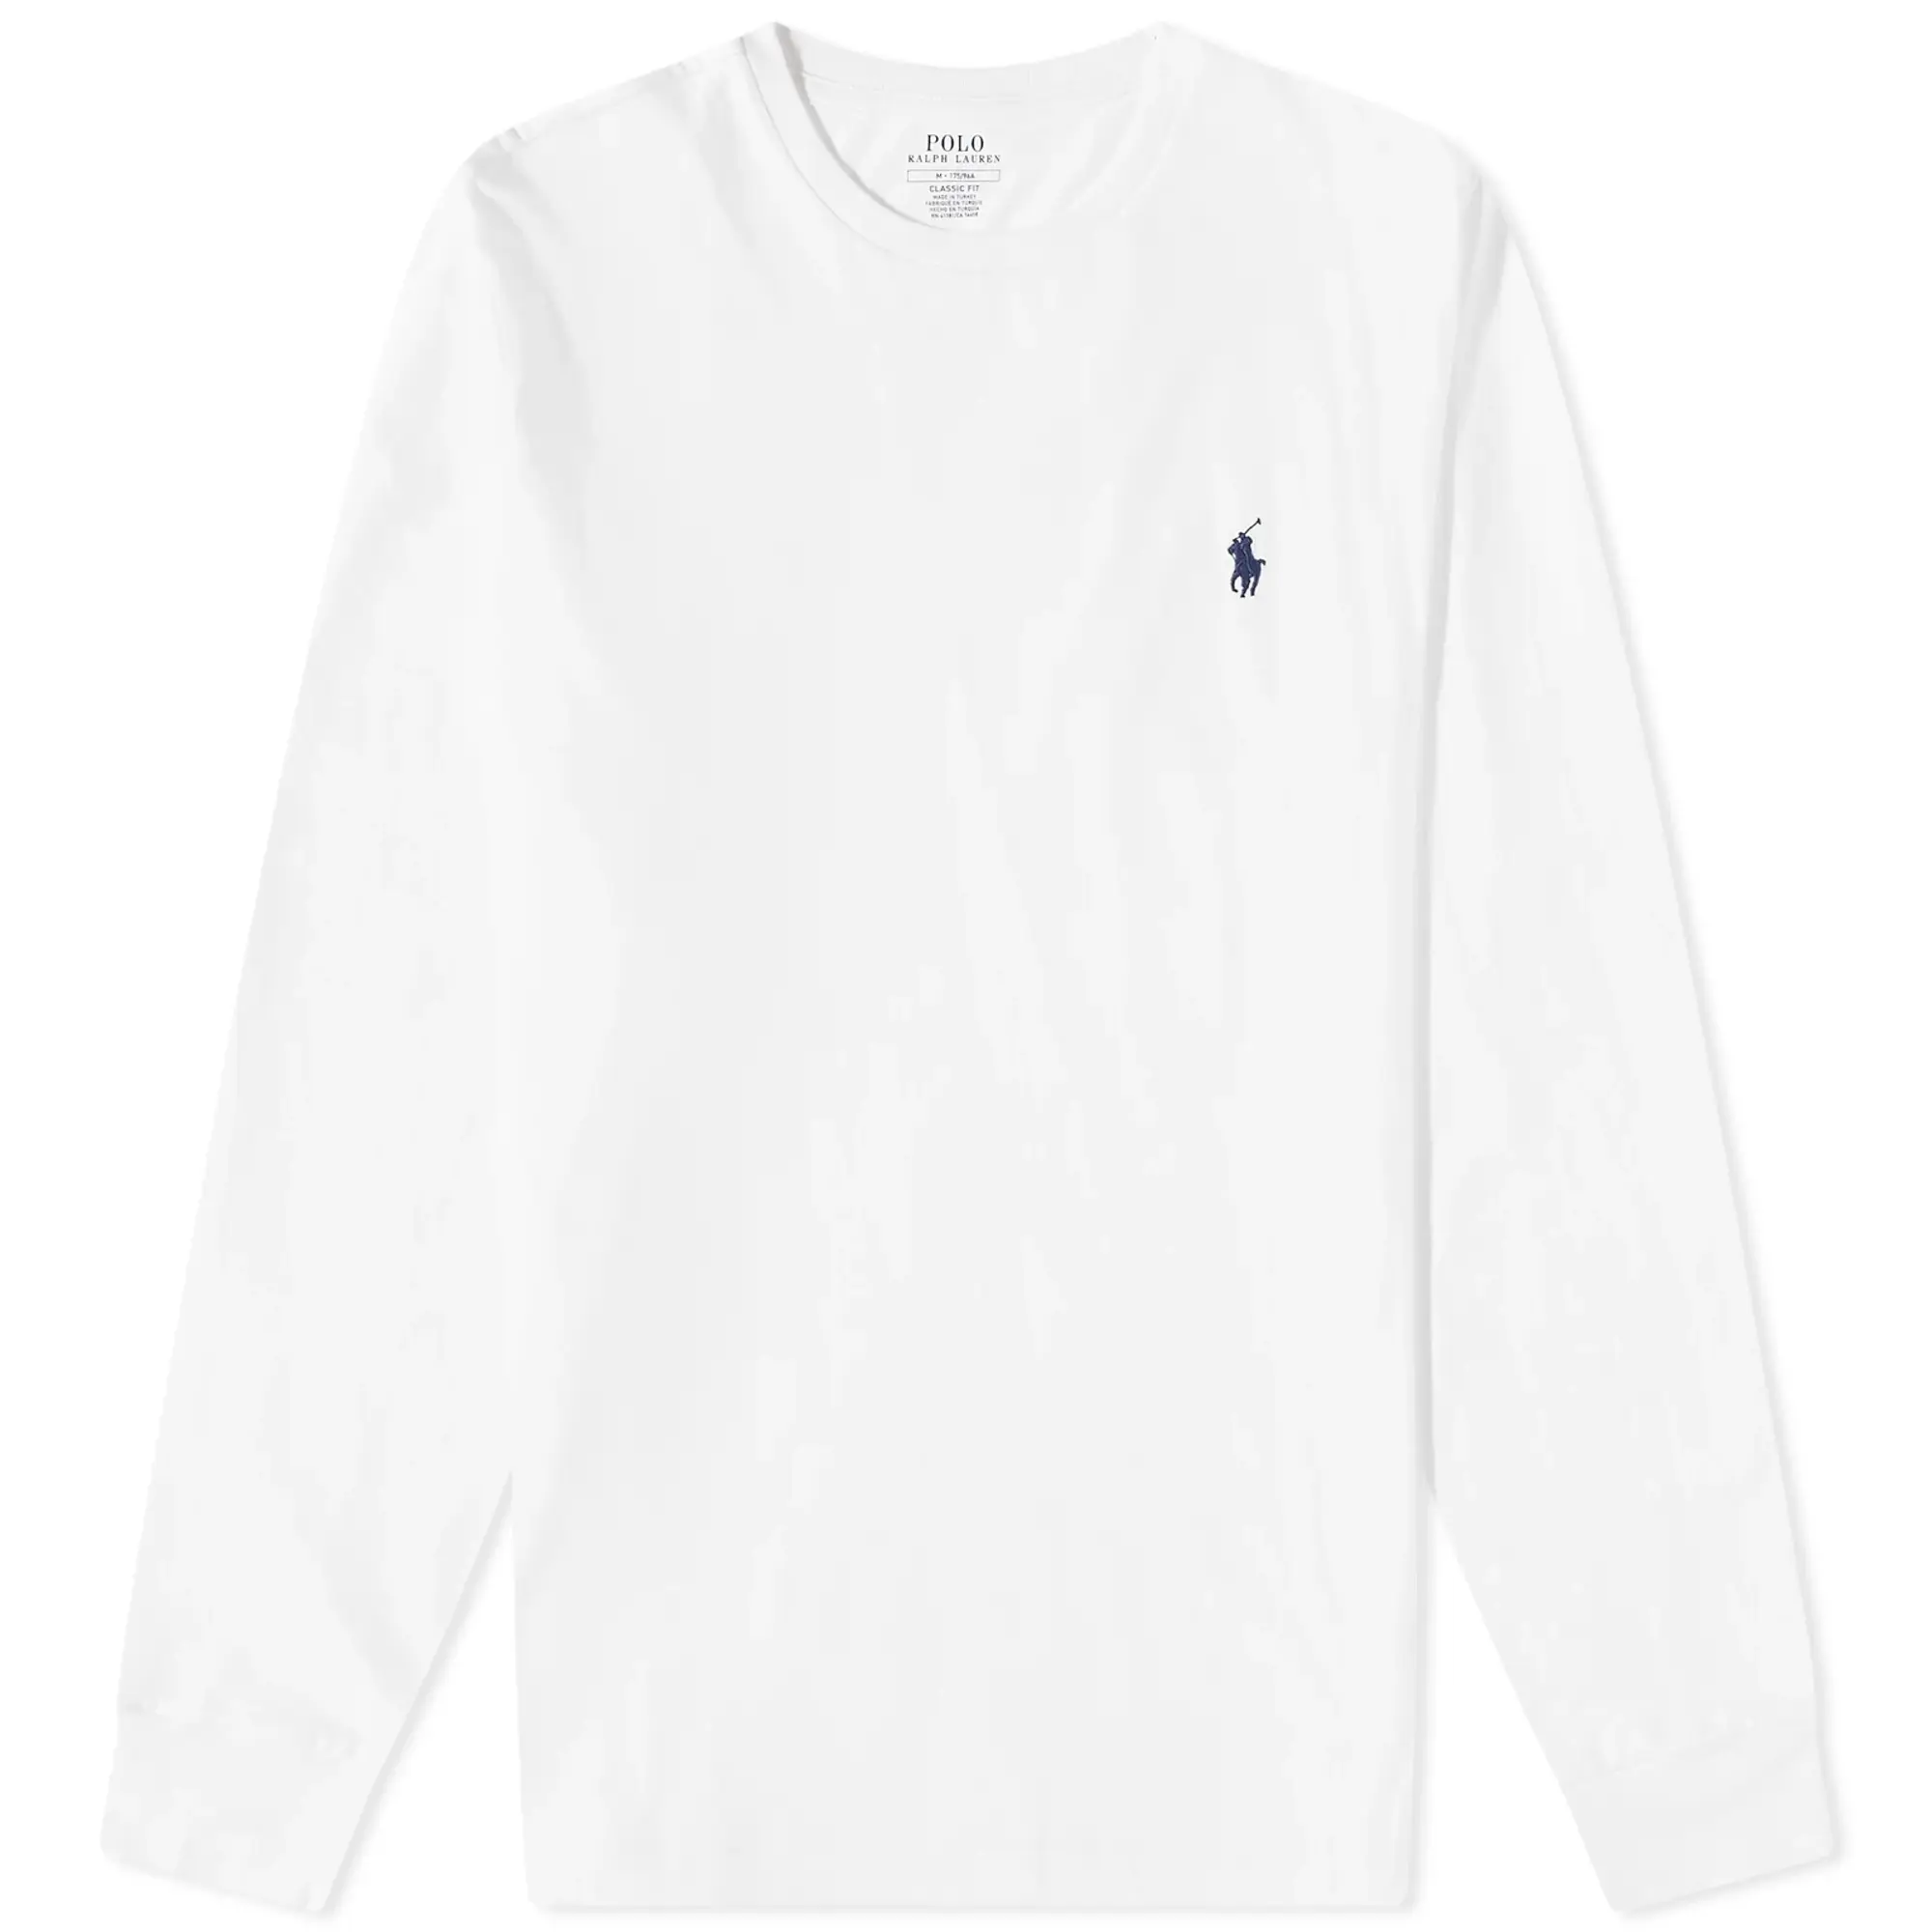 Polo Ralph Lauren Men's Long Sleeve T-Shirt White